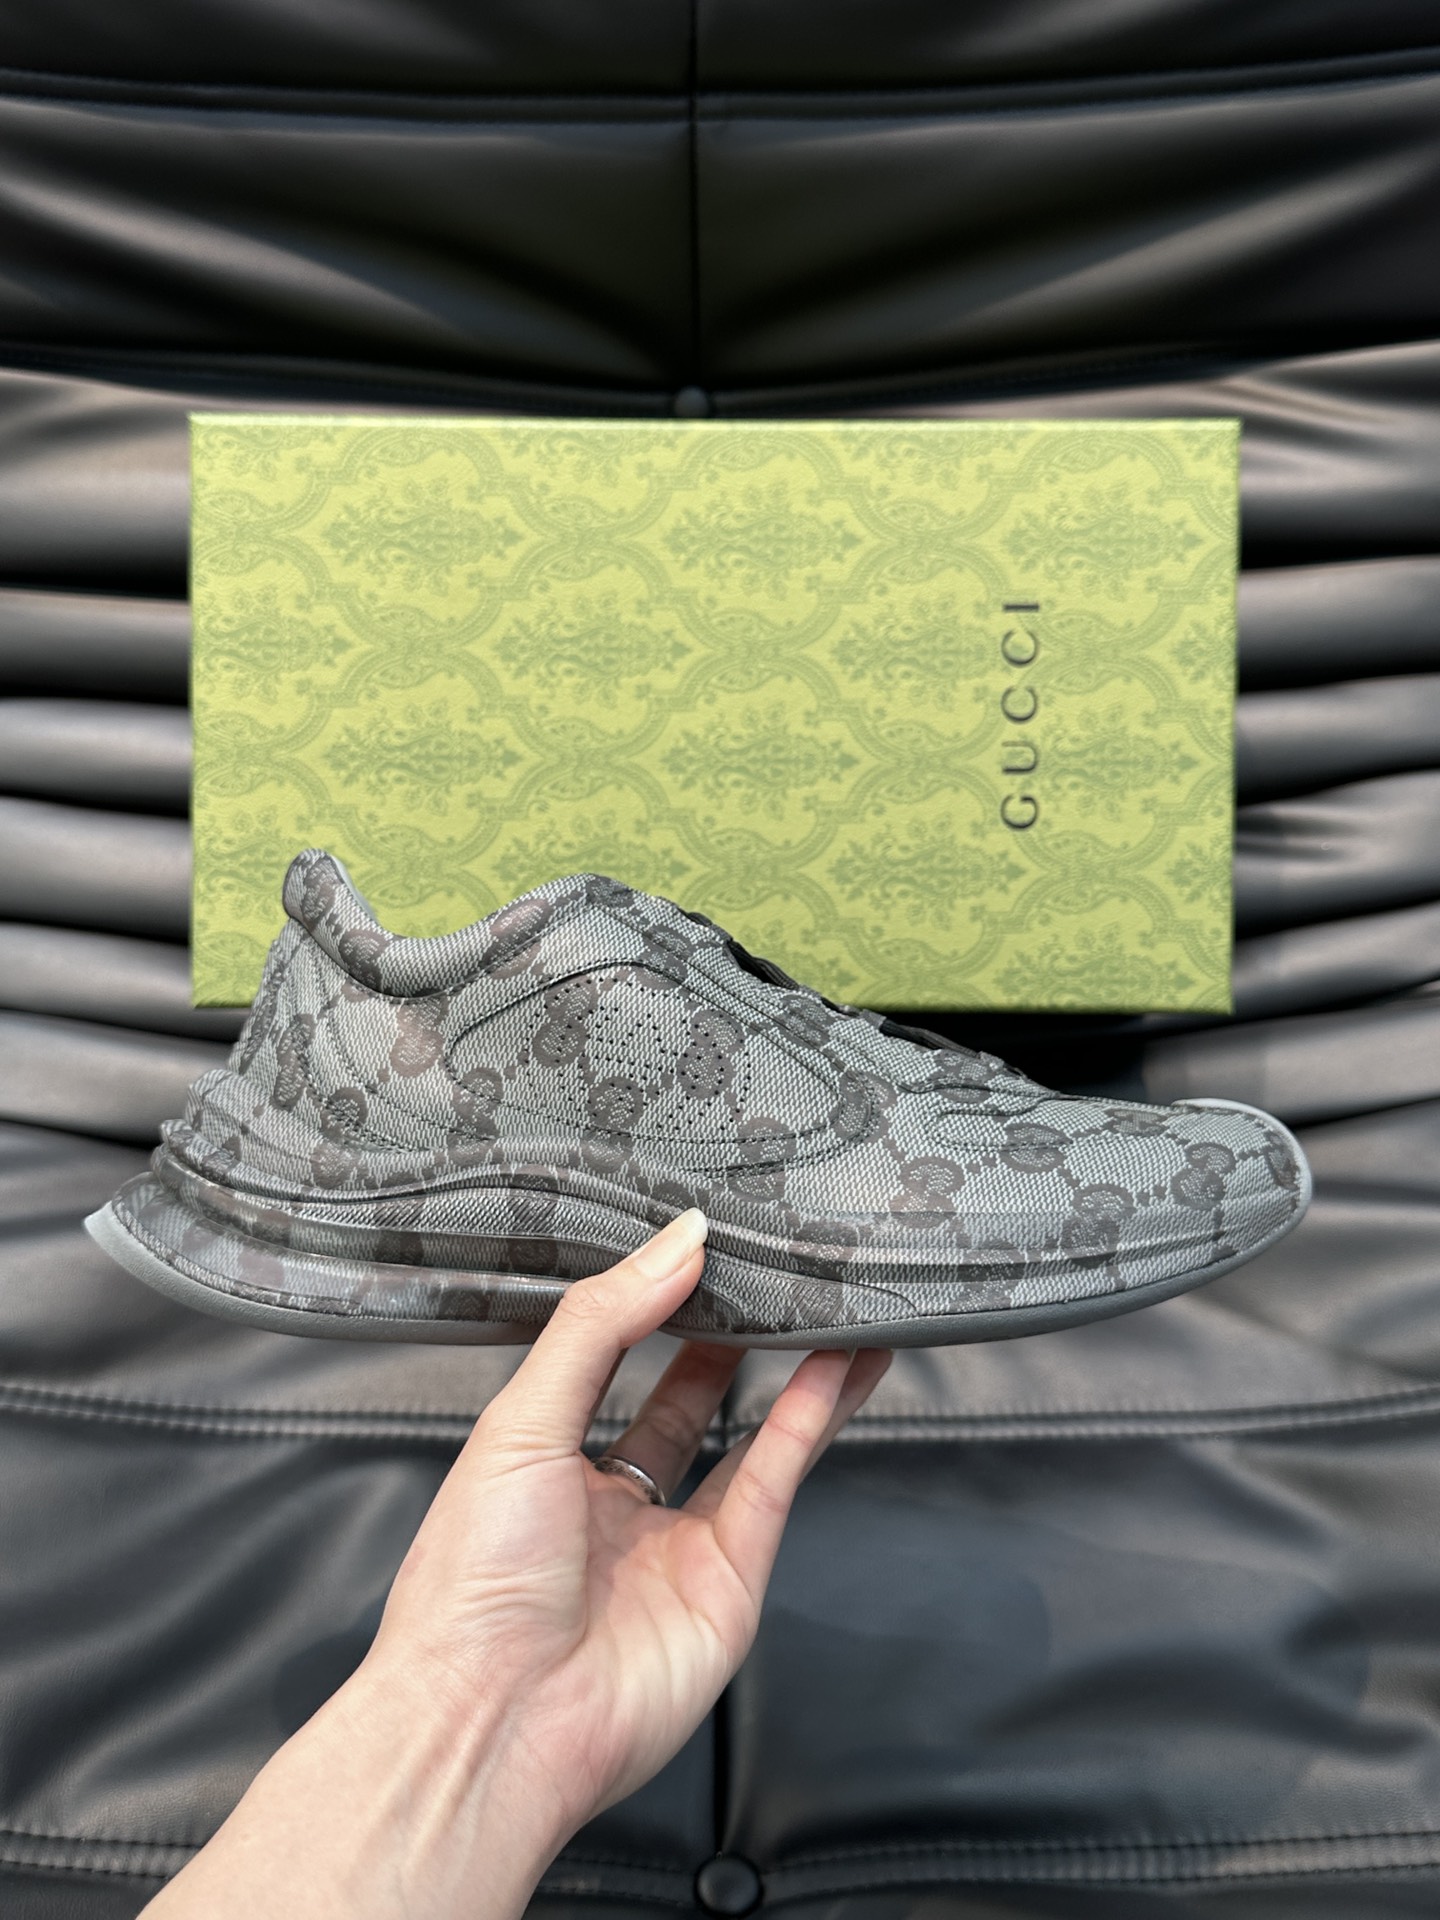 Gucc*Run系列情侣运动鞋这一单品的设计从运动世界中汲取灵感透过Gucci视角焕新演绎匠心融入醒目的